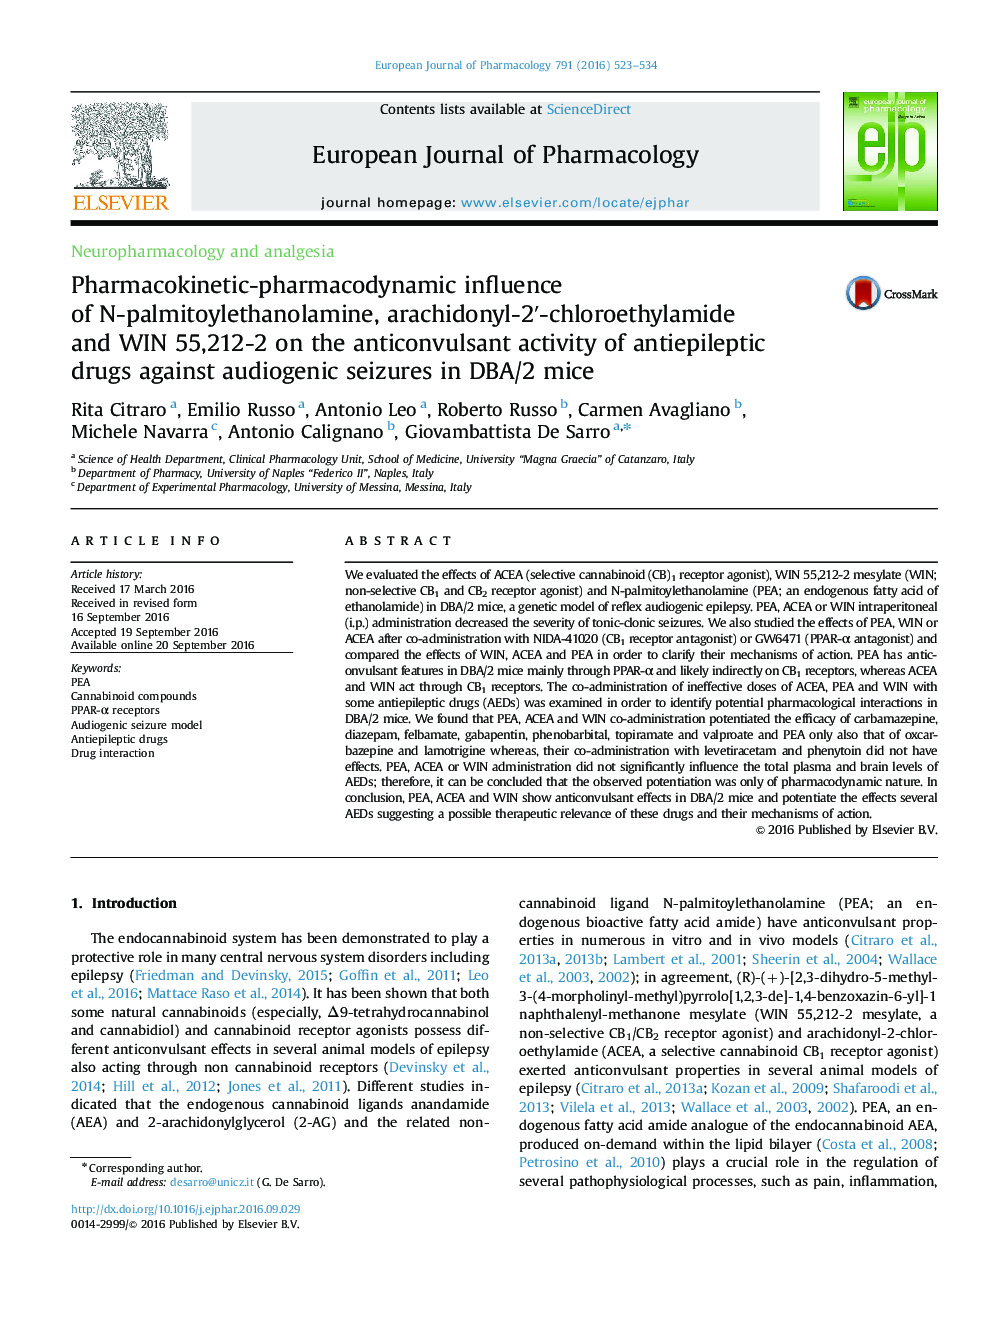 Pharmacokinetic-pharmacodynamic influence of N-palmitoylethanolamine, arachidonyl-2â²-chloroethylamide and WIN 55,212-2 on the anticonvulsant activity of antiepileptic drugs against audiogenic seizures in DBA/2 mice